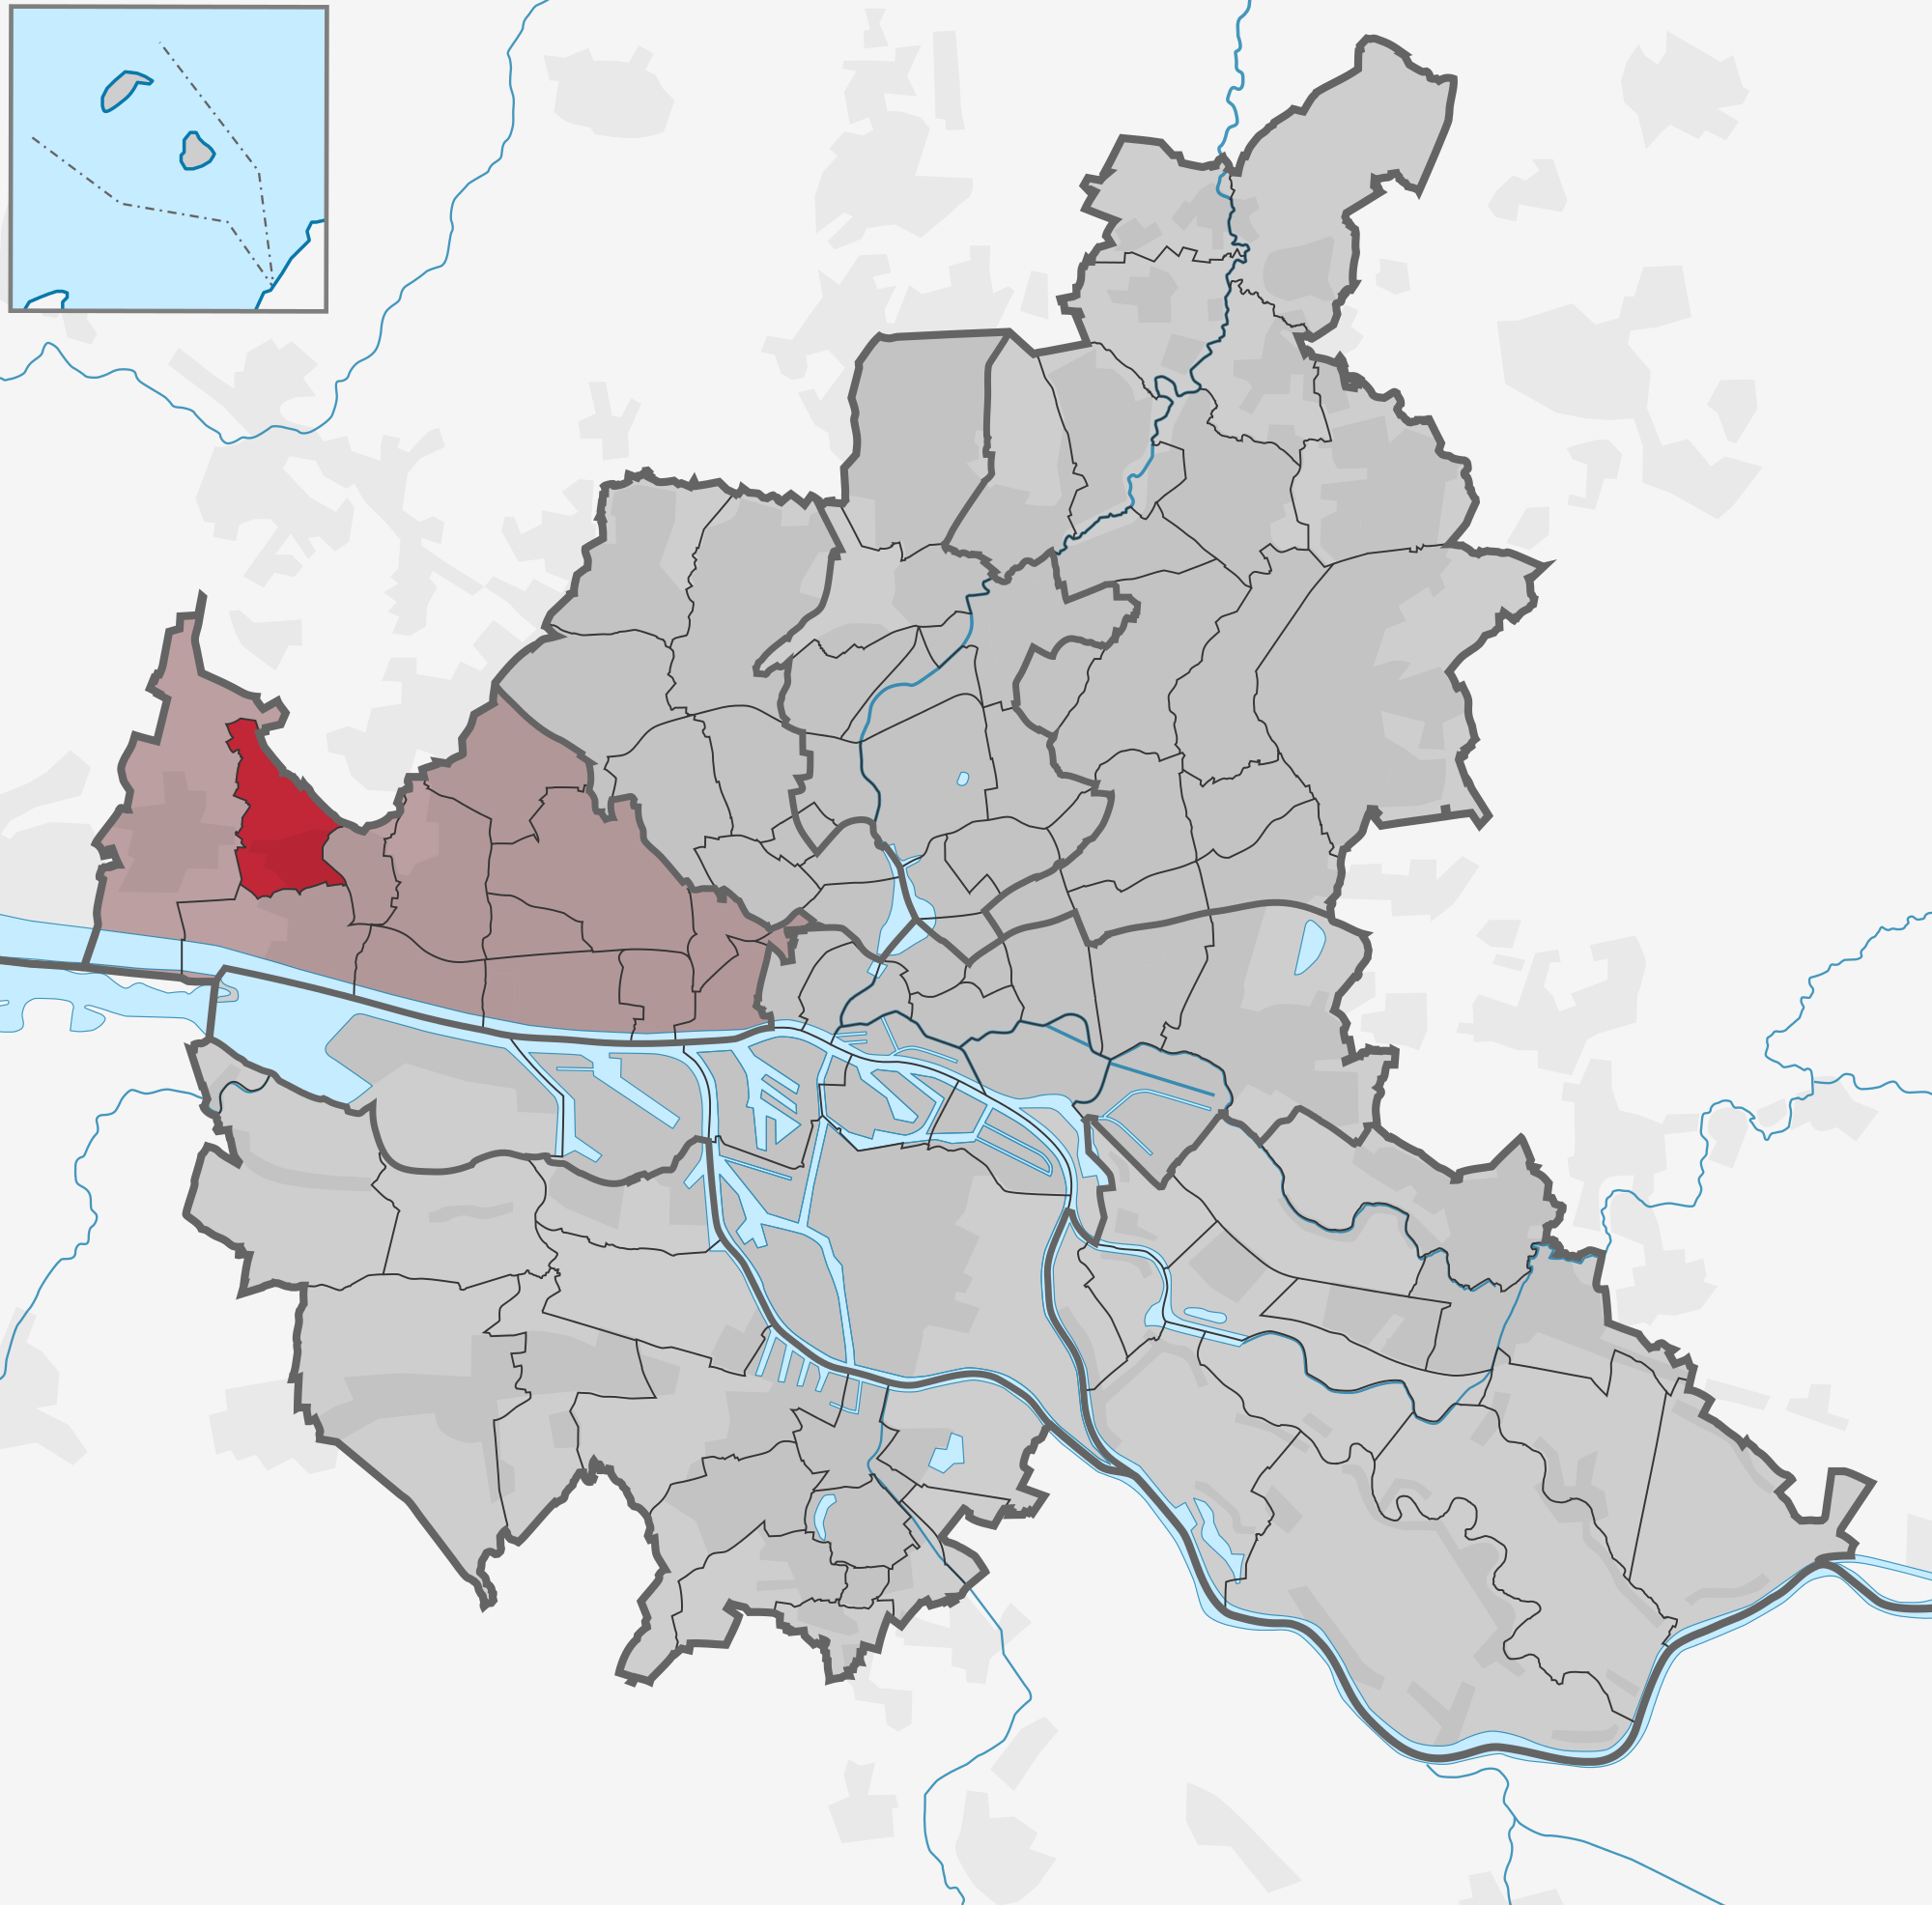 Stadtteil Sülldorf (Bezirk Altona)